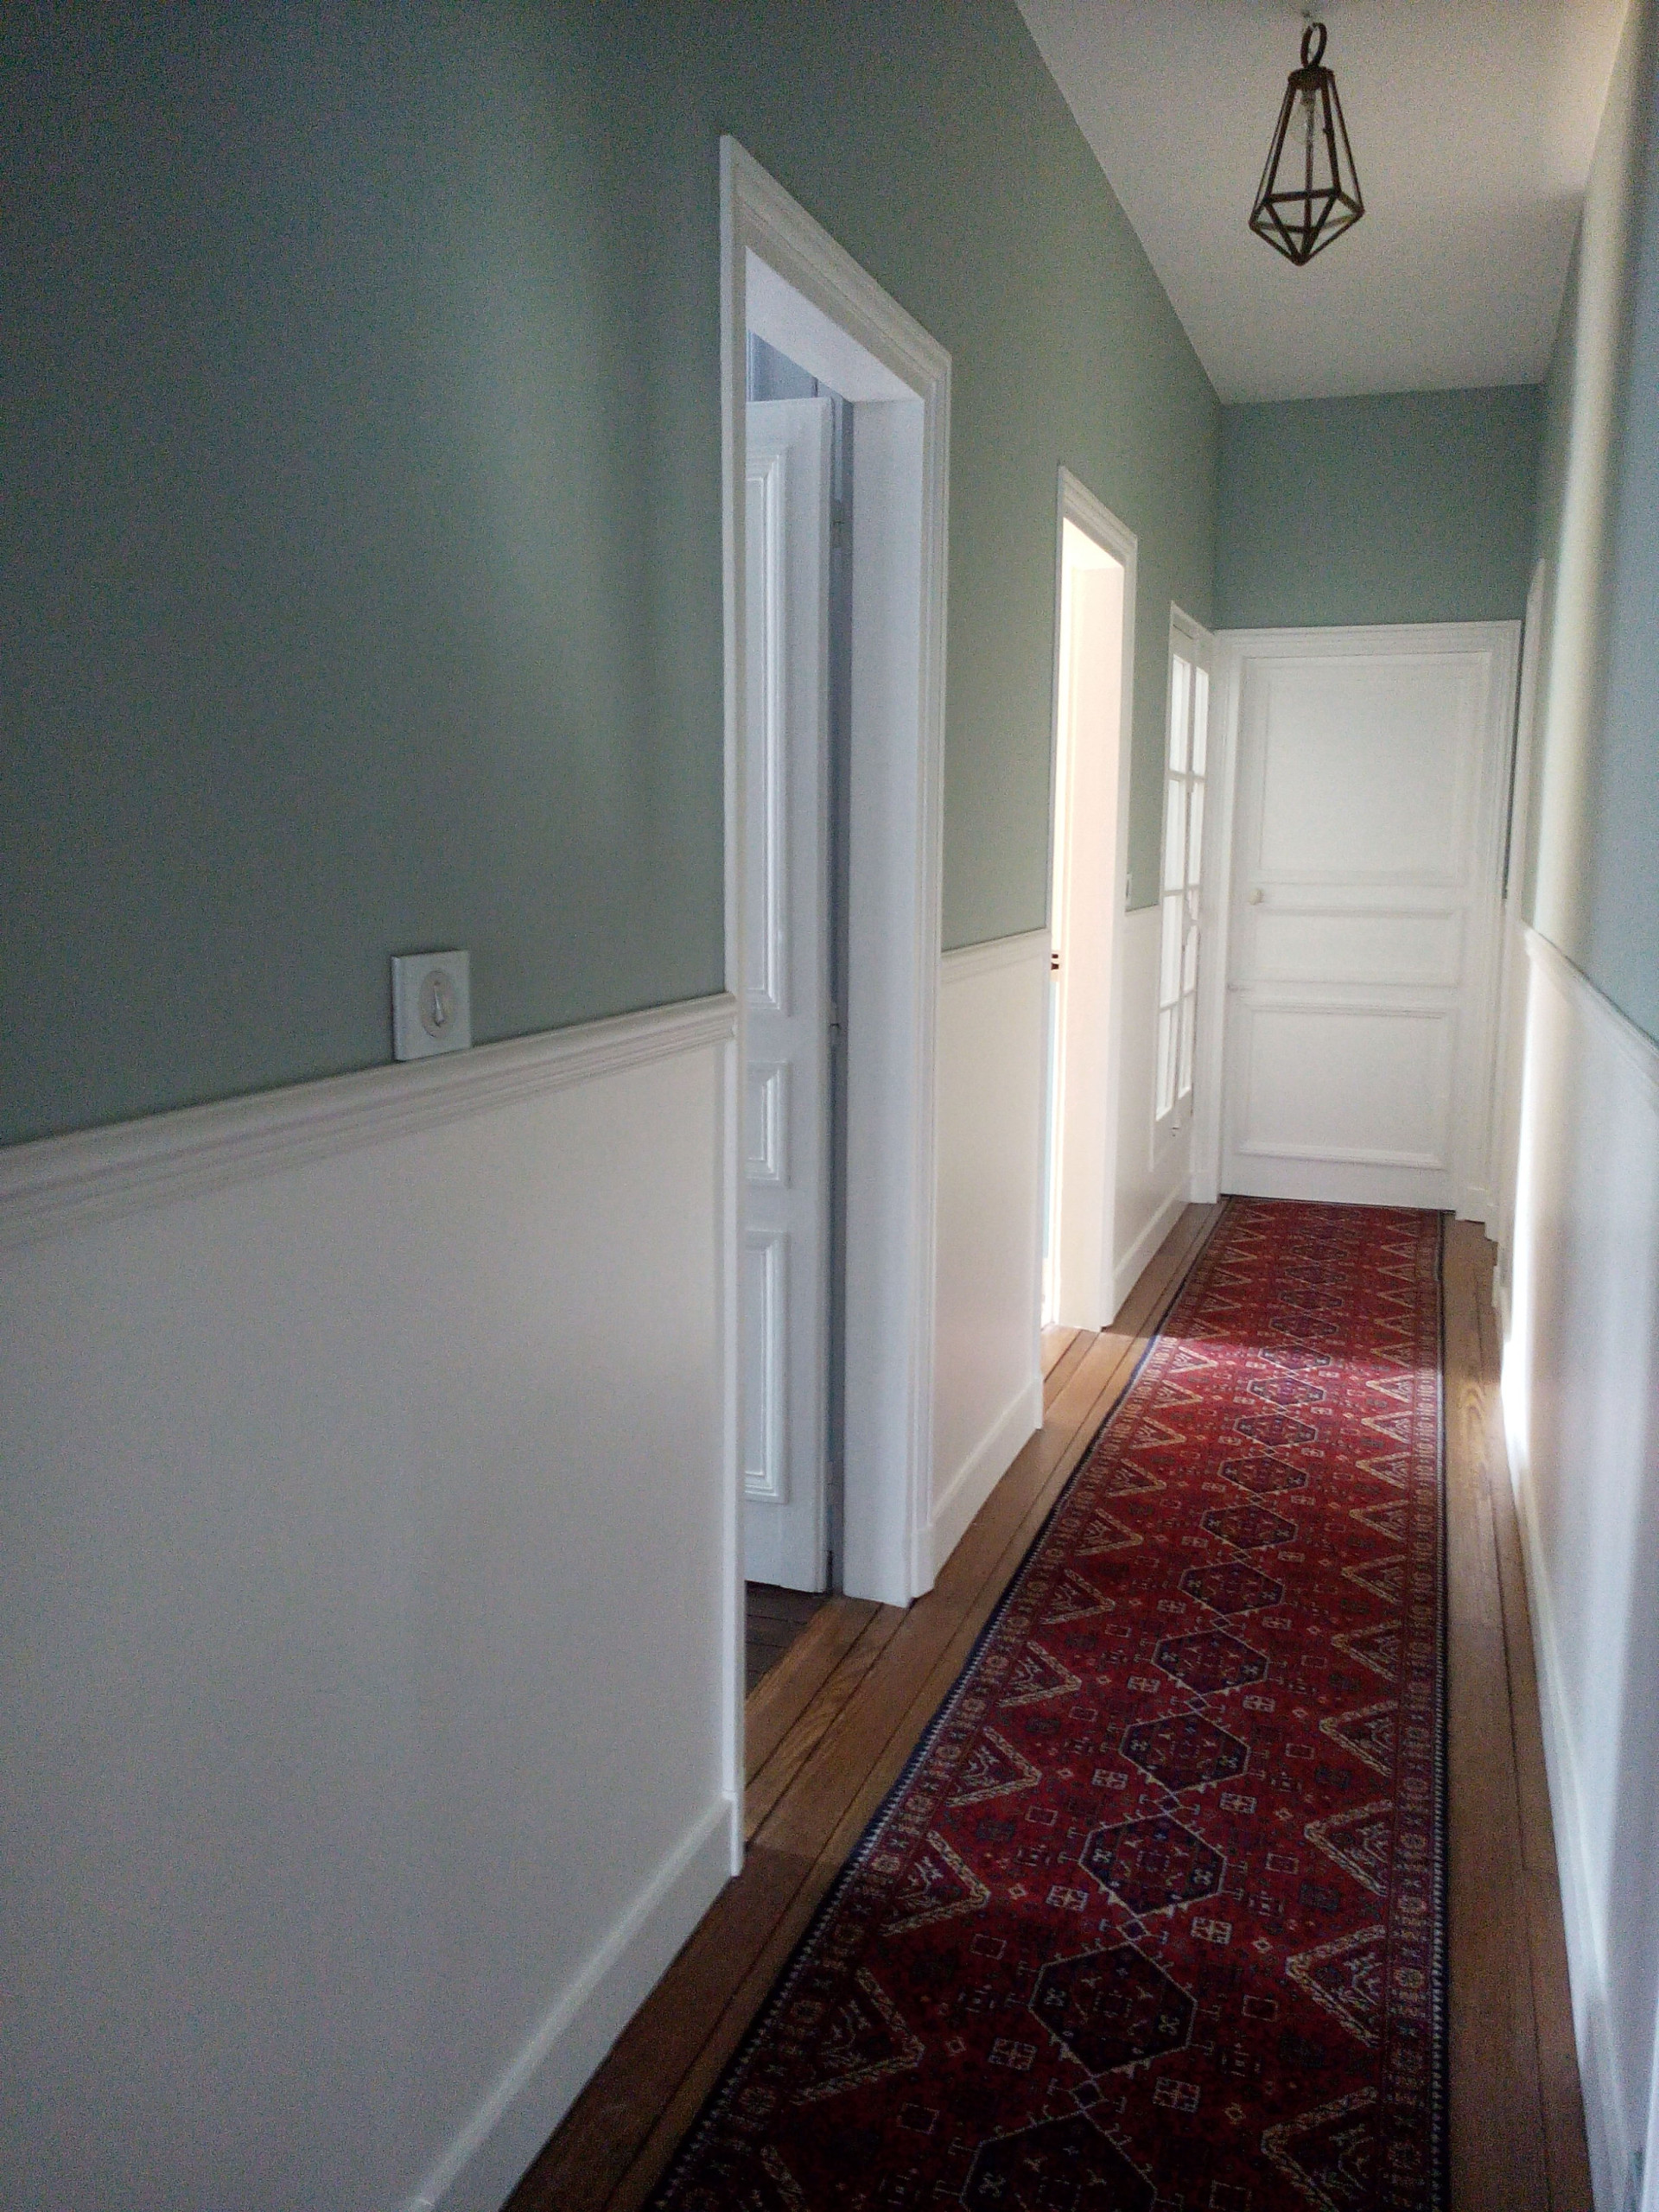 Quelle couleur pour un couloir? Les tendances du moment